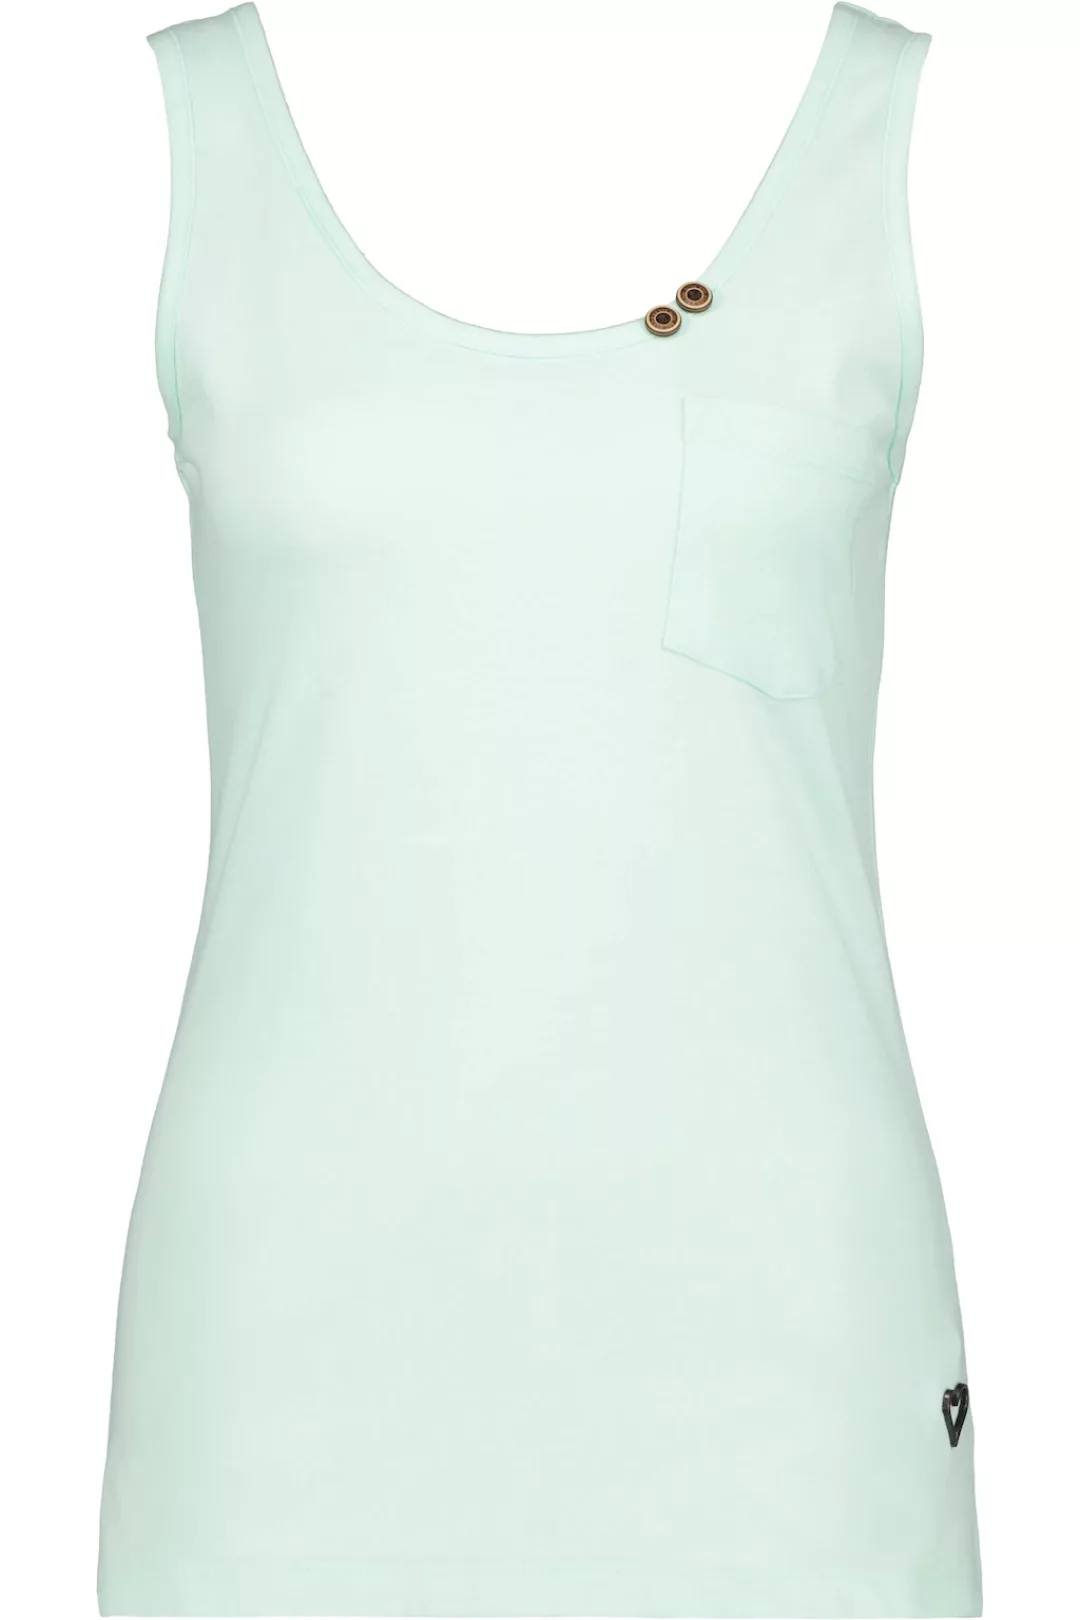 Alife & Kickin T-Shirt "JennyAK A Top Damen Tanktop, Shirt" günstig online kaufen